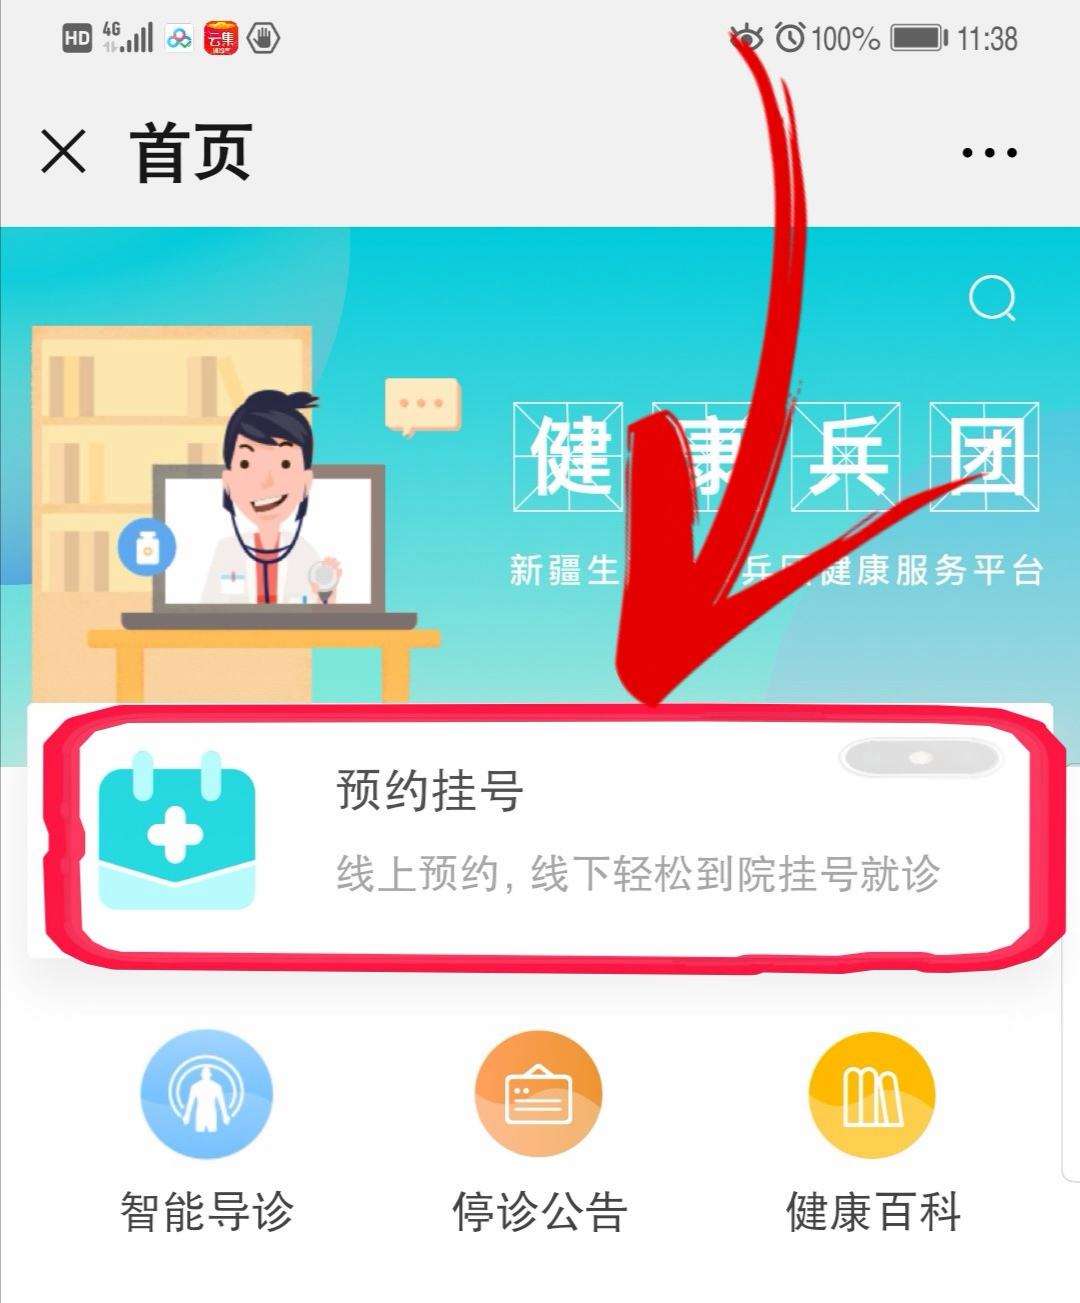 关于北京市海淀医院跑腿挂号，先挂号后付费的信息